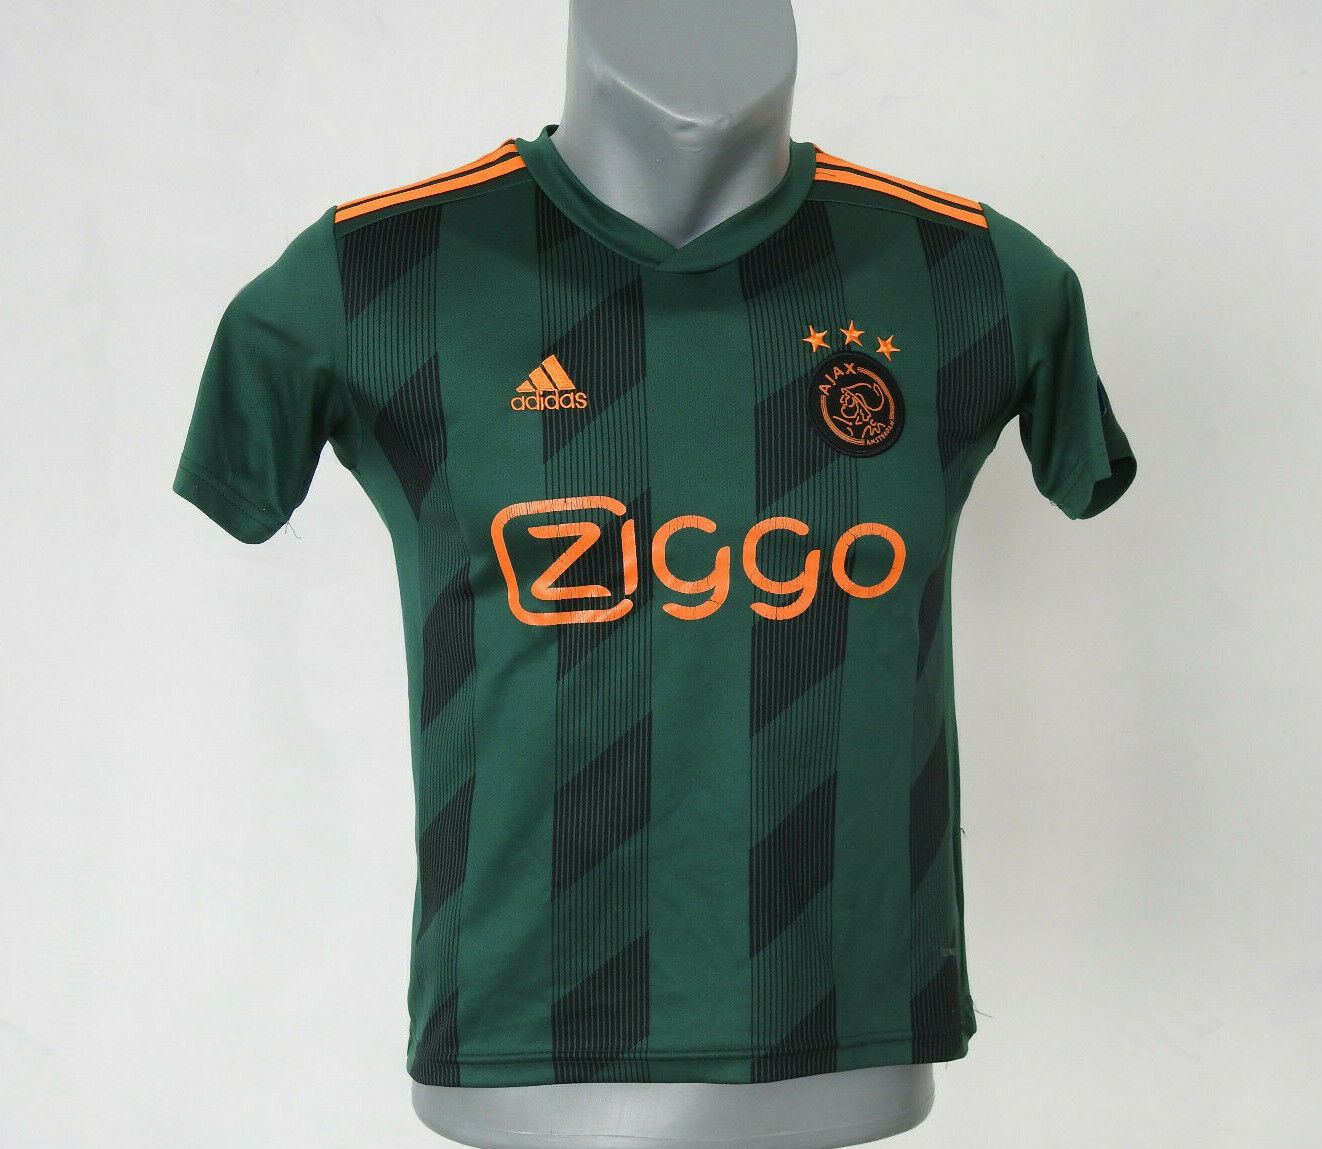 Martelaar repetitie Ewell Ajax Amsterdam 2019 2020 Away Jersey Adidas Green Shirt Size Boys S  Football CL | eBay